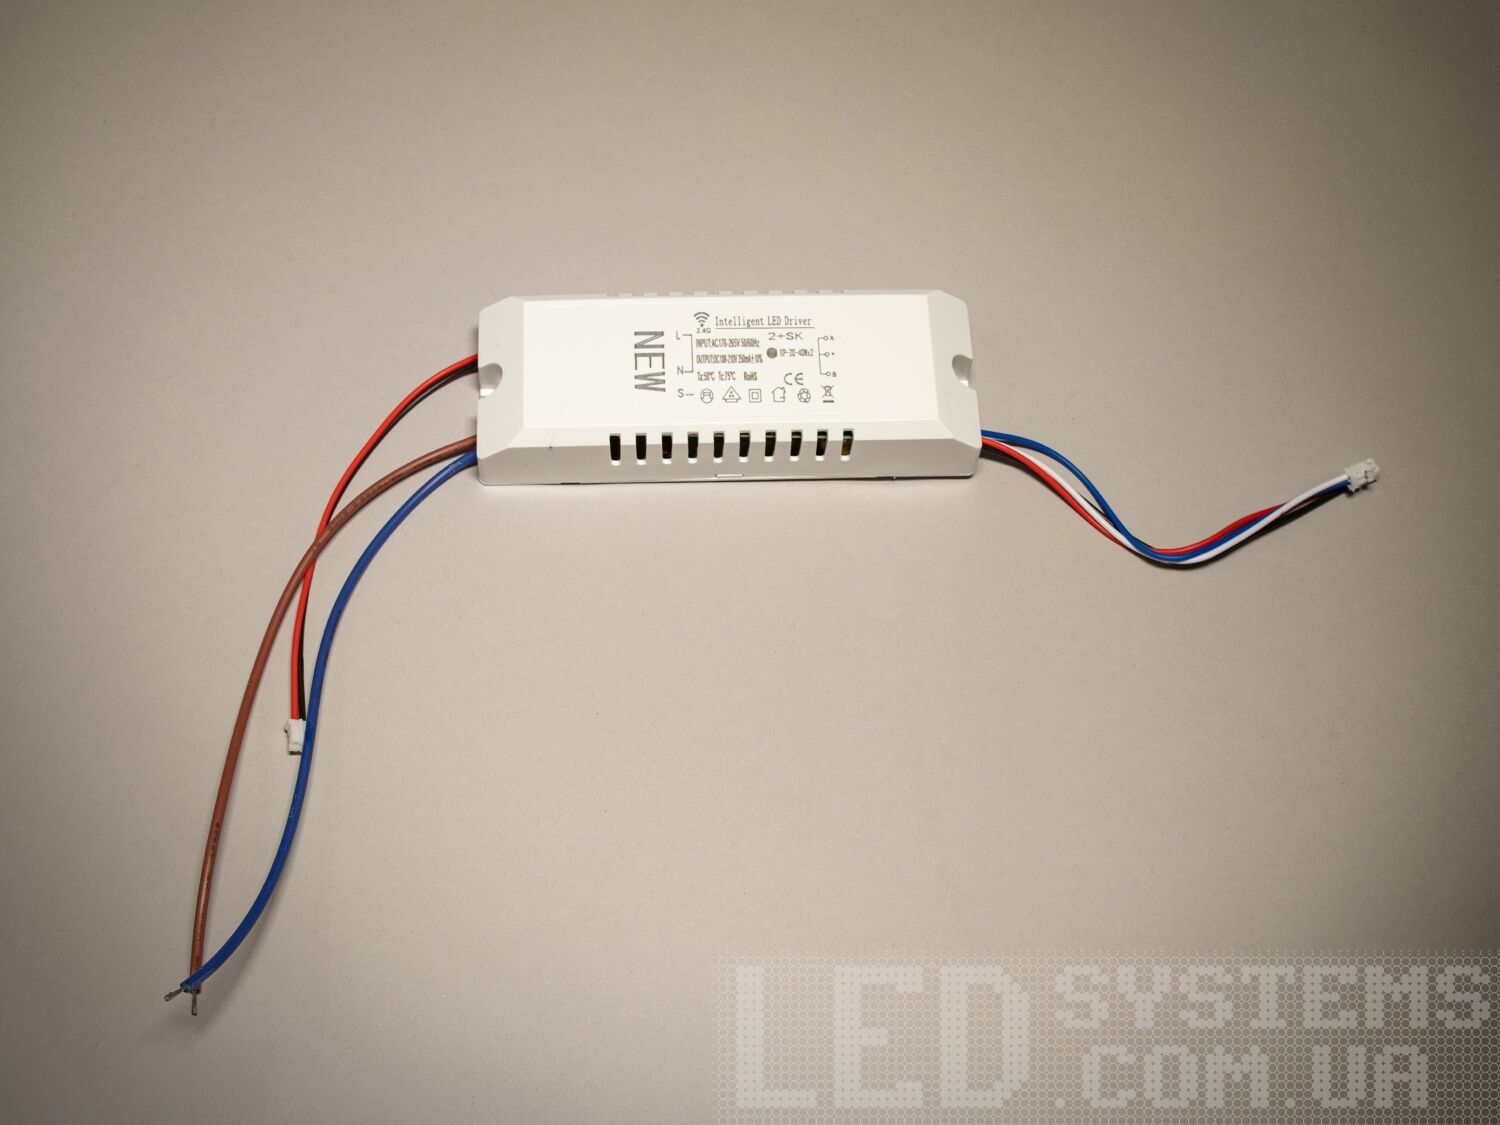 Універсальний комплект для переобладнання світлодіодних люстр.

Блок приймача пульта встановлюється місце рідного блоку живлення світлодіодної люстри. Цей комплект може бути використаний на люстрах з робочим струмом світлодіодних модулів від 210 до 300 мА. Діммер має 2 вихідні канали для підключення до стандартної світлодіодної люстри, схема підключення 